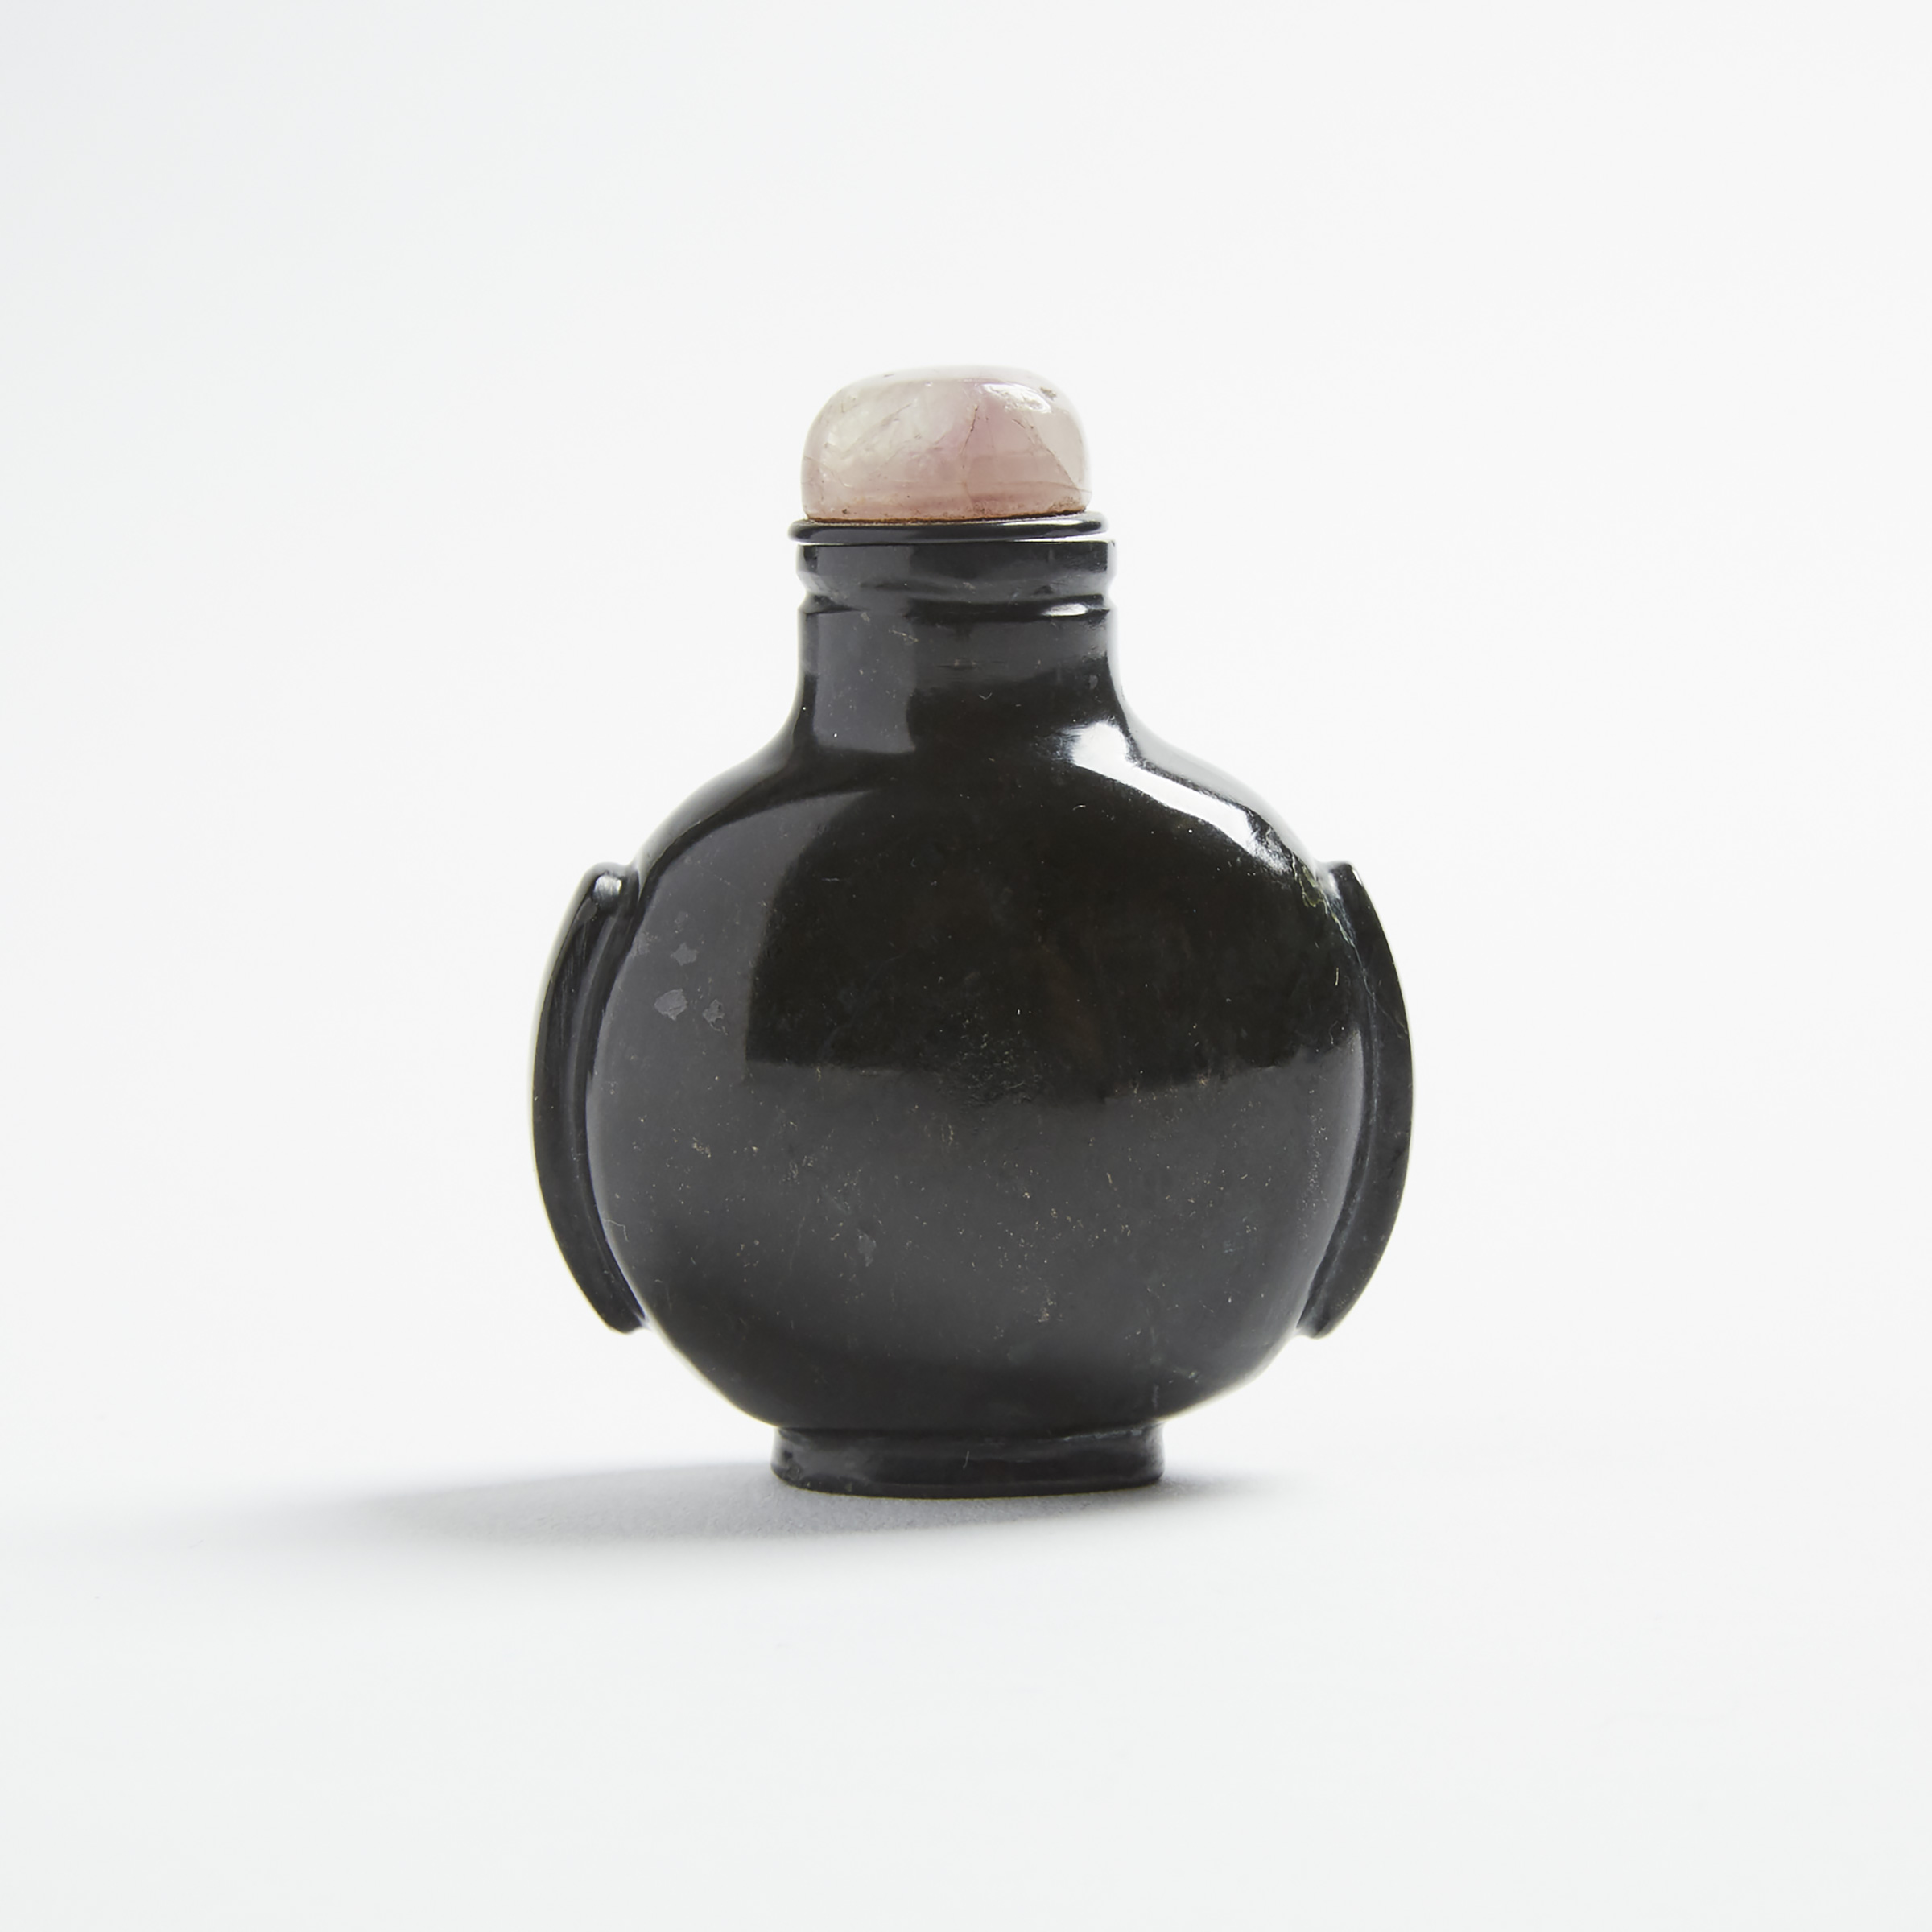 A Black Hardstone Carved Snuff Bottle